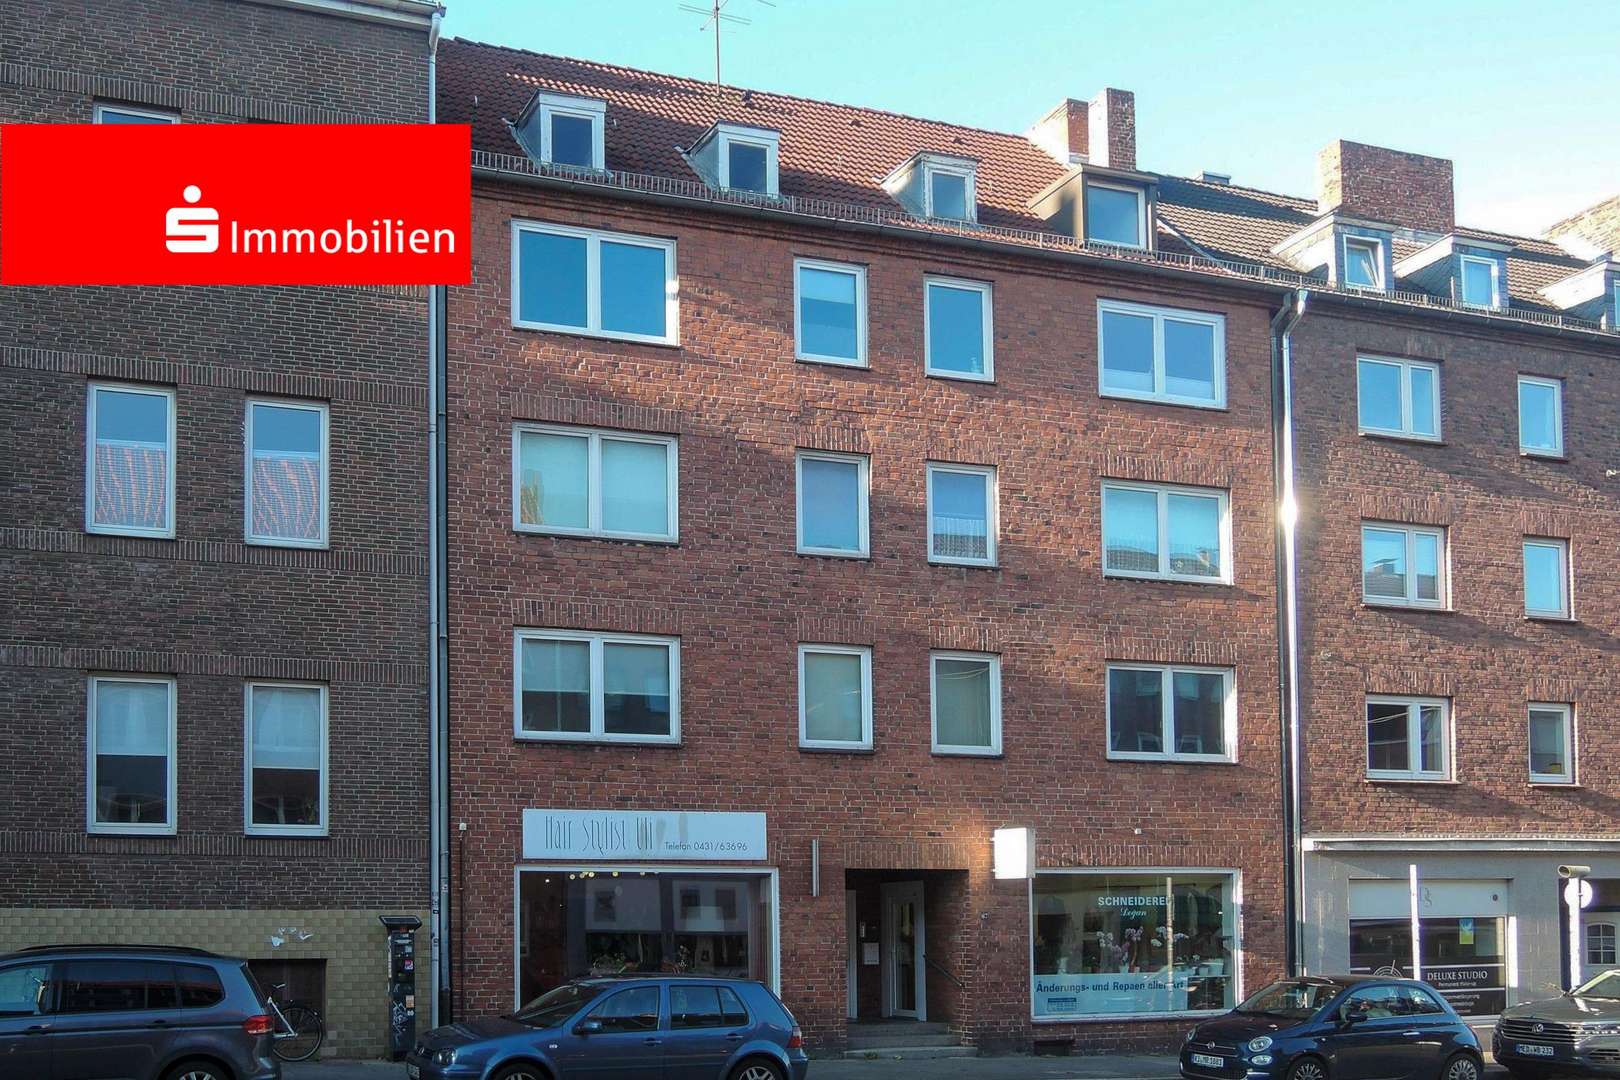 Frontfassade - Erdgeschosswohnung in 24114 Kiel mit 50m² als Kapitalanlage günstig kaufen